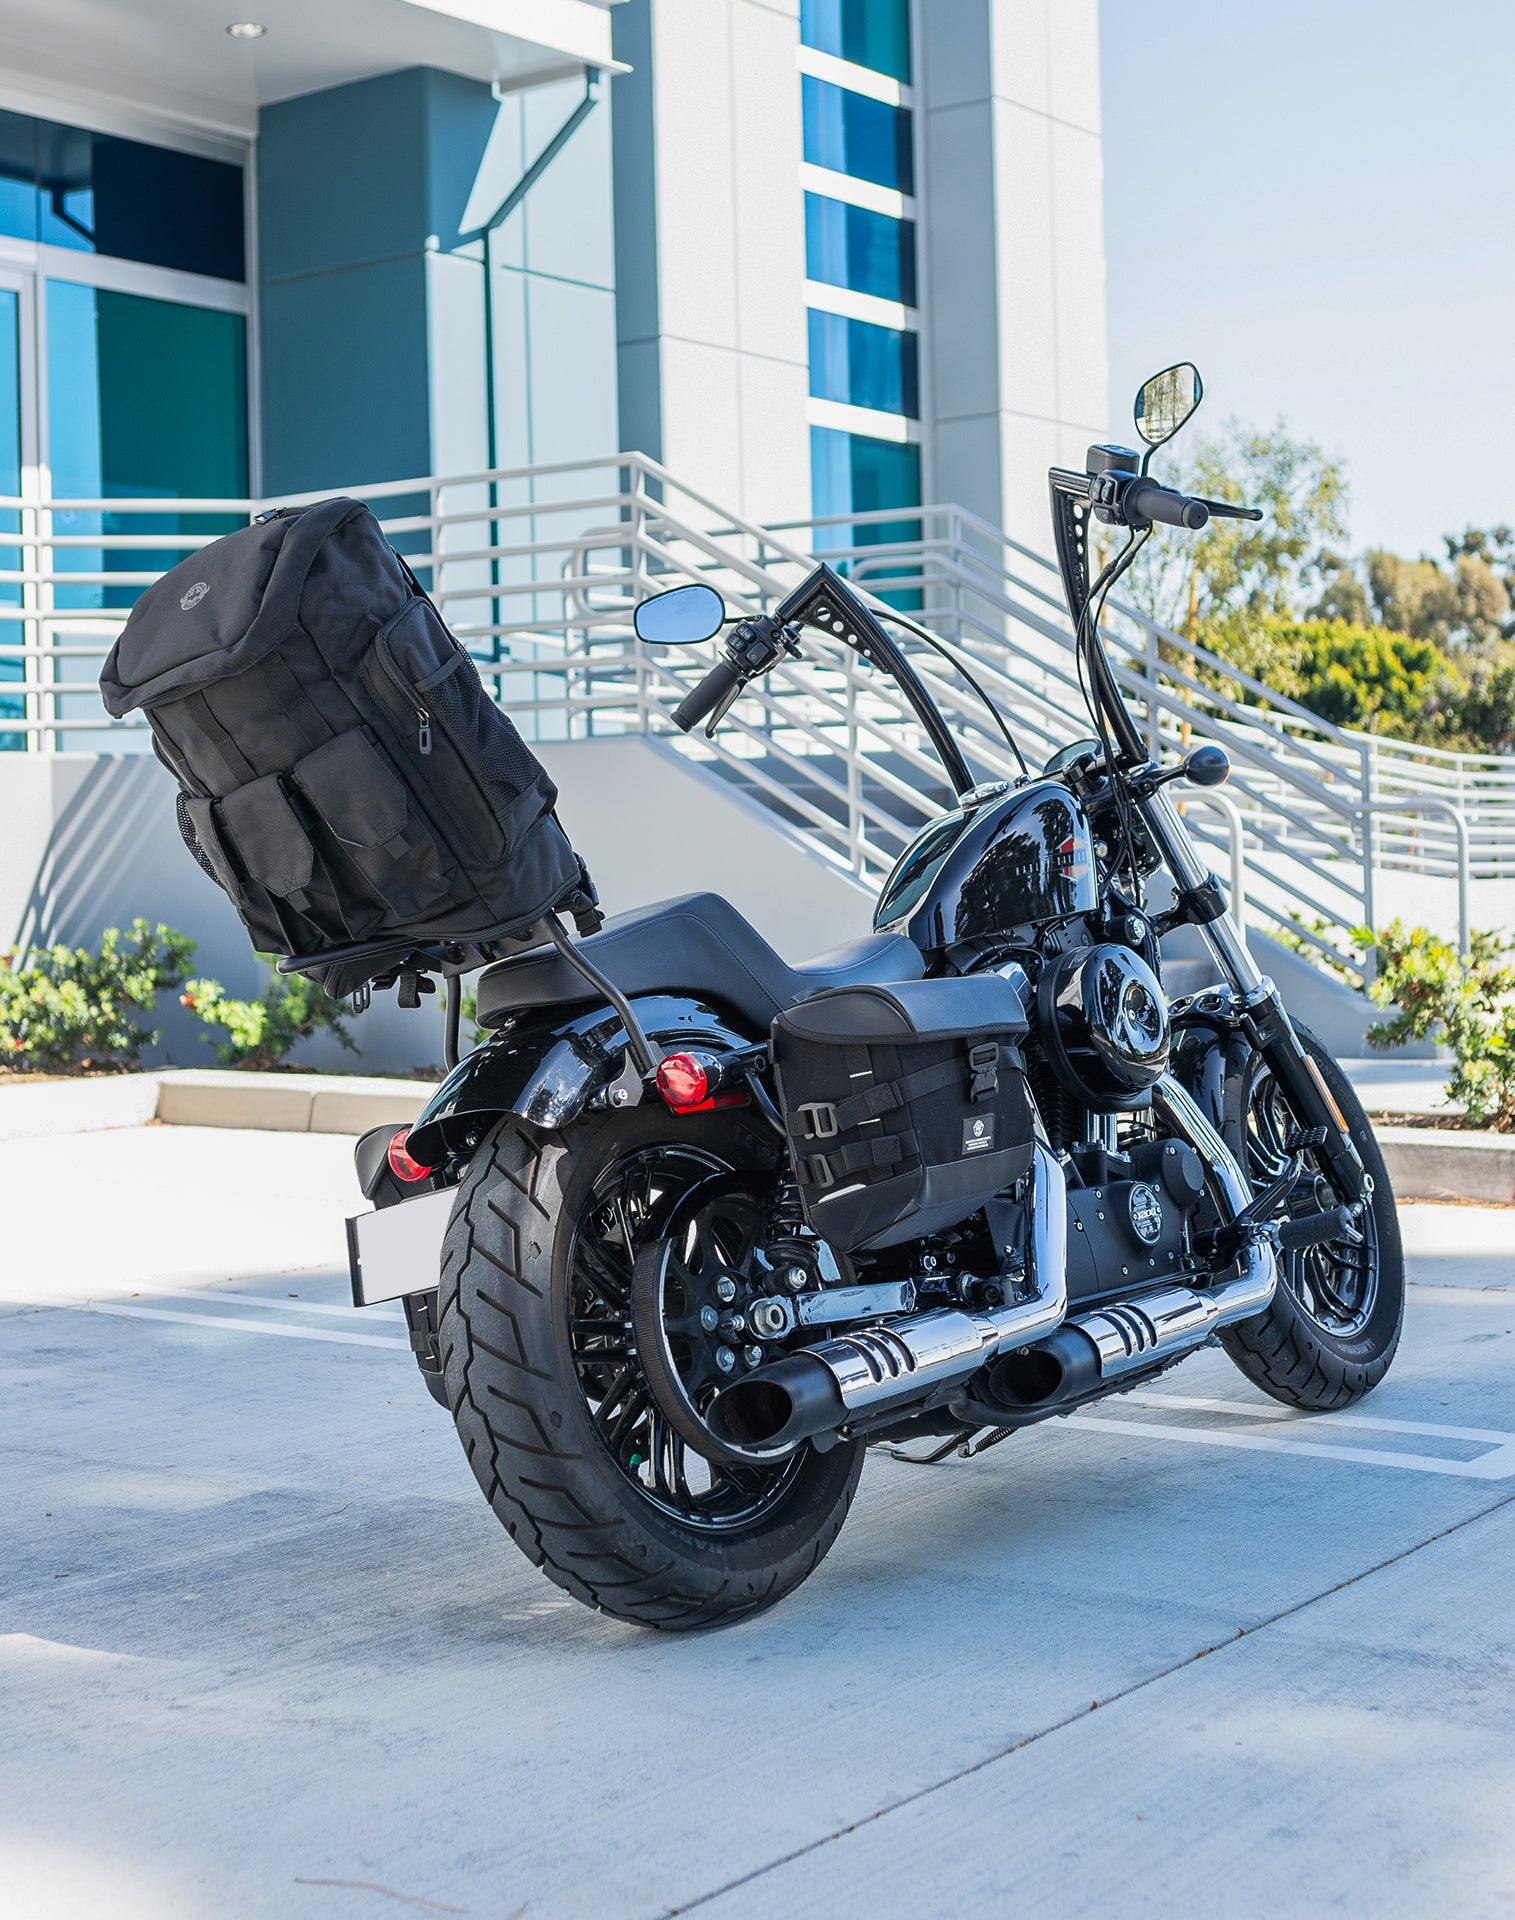 32L - Trident Large Kawasaki Motorcycle Tail Bag